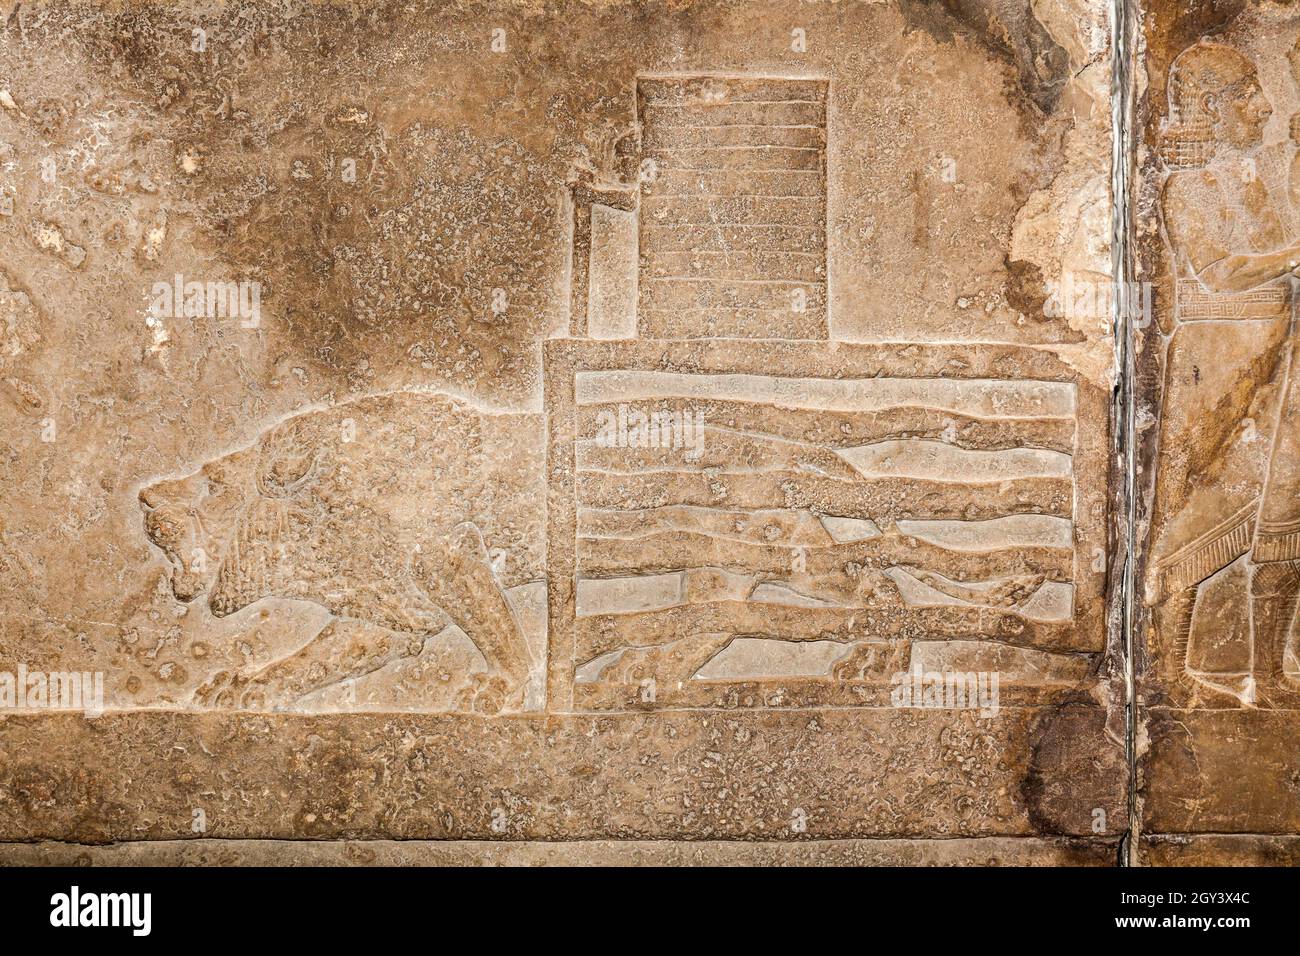 Talla asiria alrededor del 645 ac de Nínive . De una caza de leones en la arena donde el león es conducido hacia el rey que los mata. Foto de stock